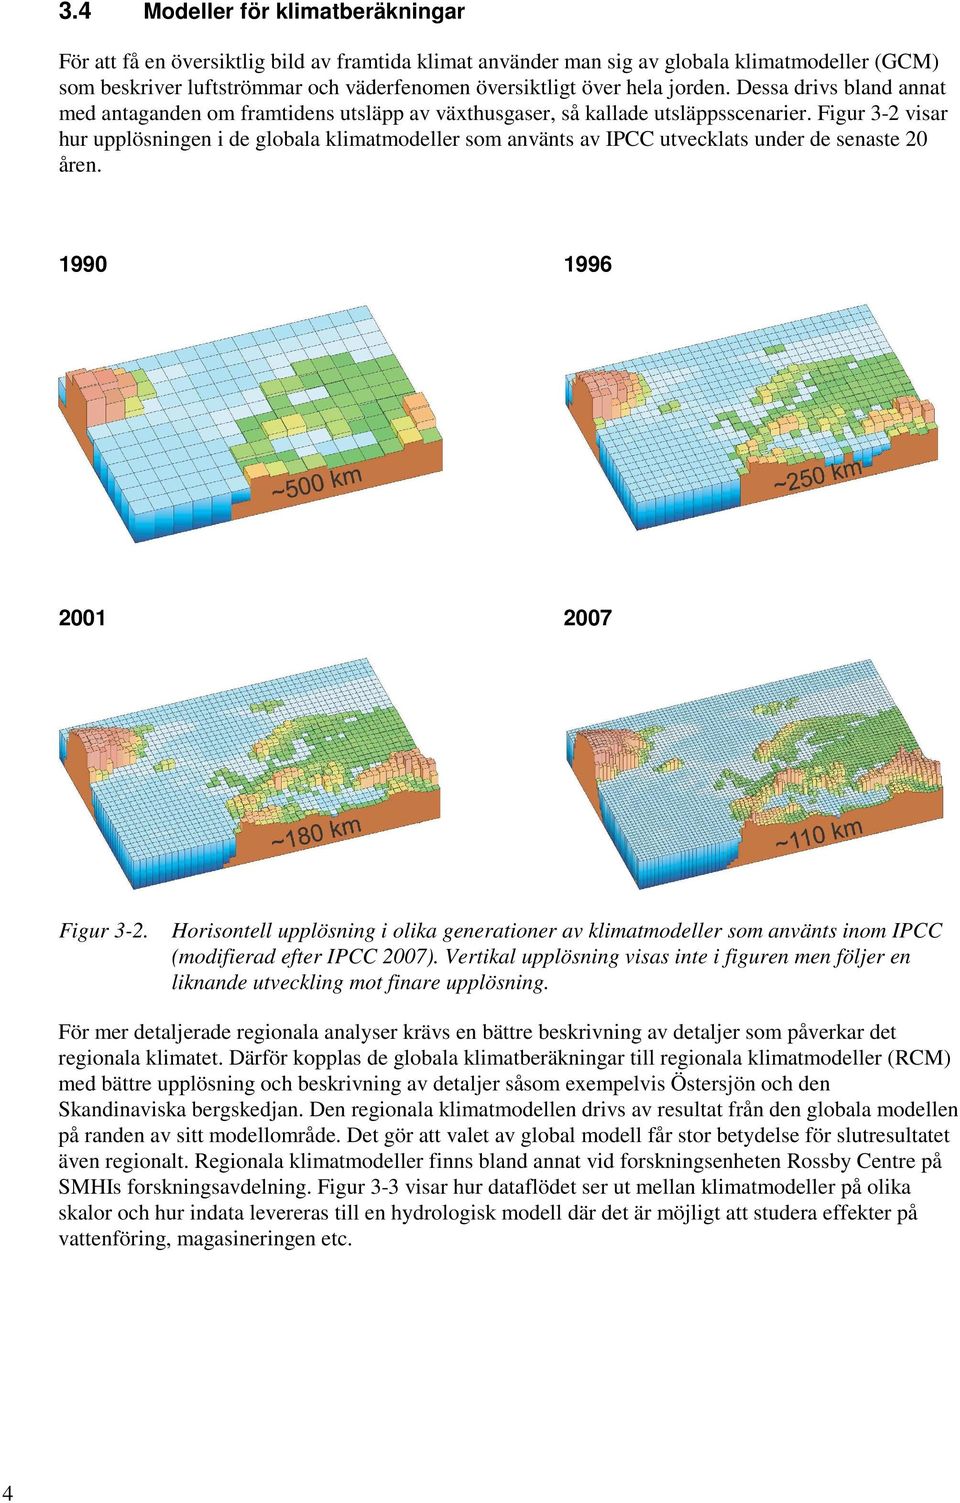 Figur 3-2 visar hur upplösningen i de globala klimatmodeller som använts av IPCC utvecklats under de senaste 20 åren. 1990 1996 2001 2007 Figur 3-2.